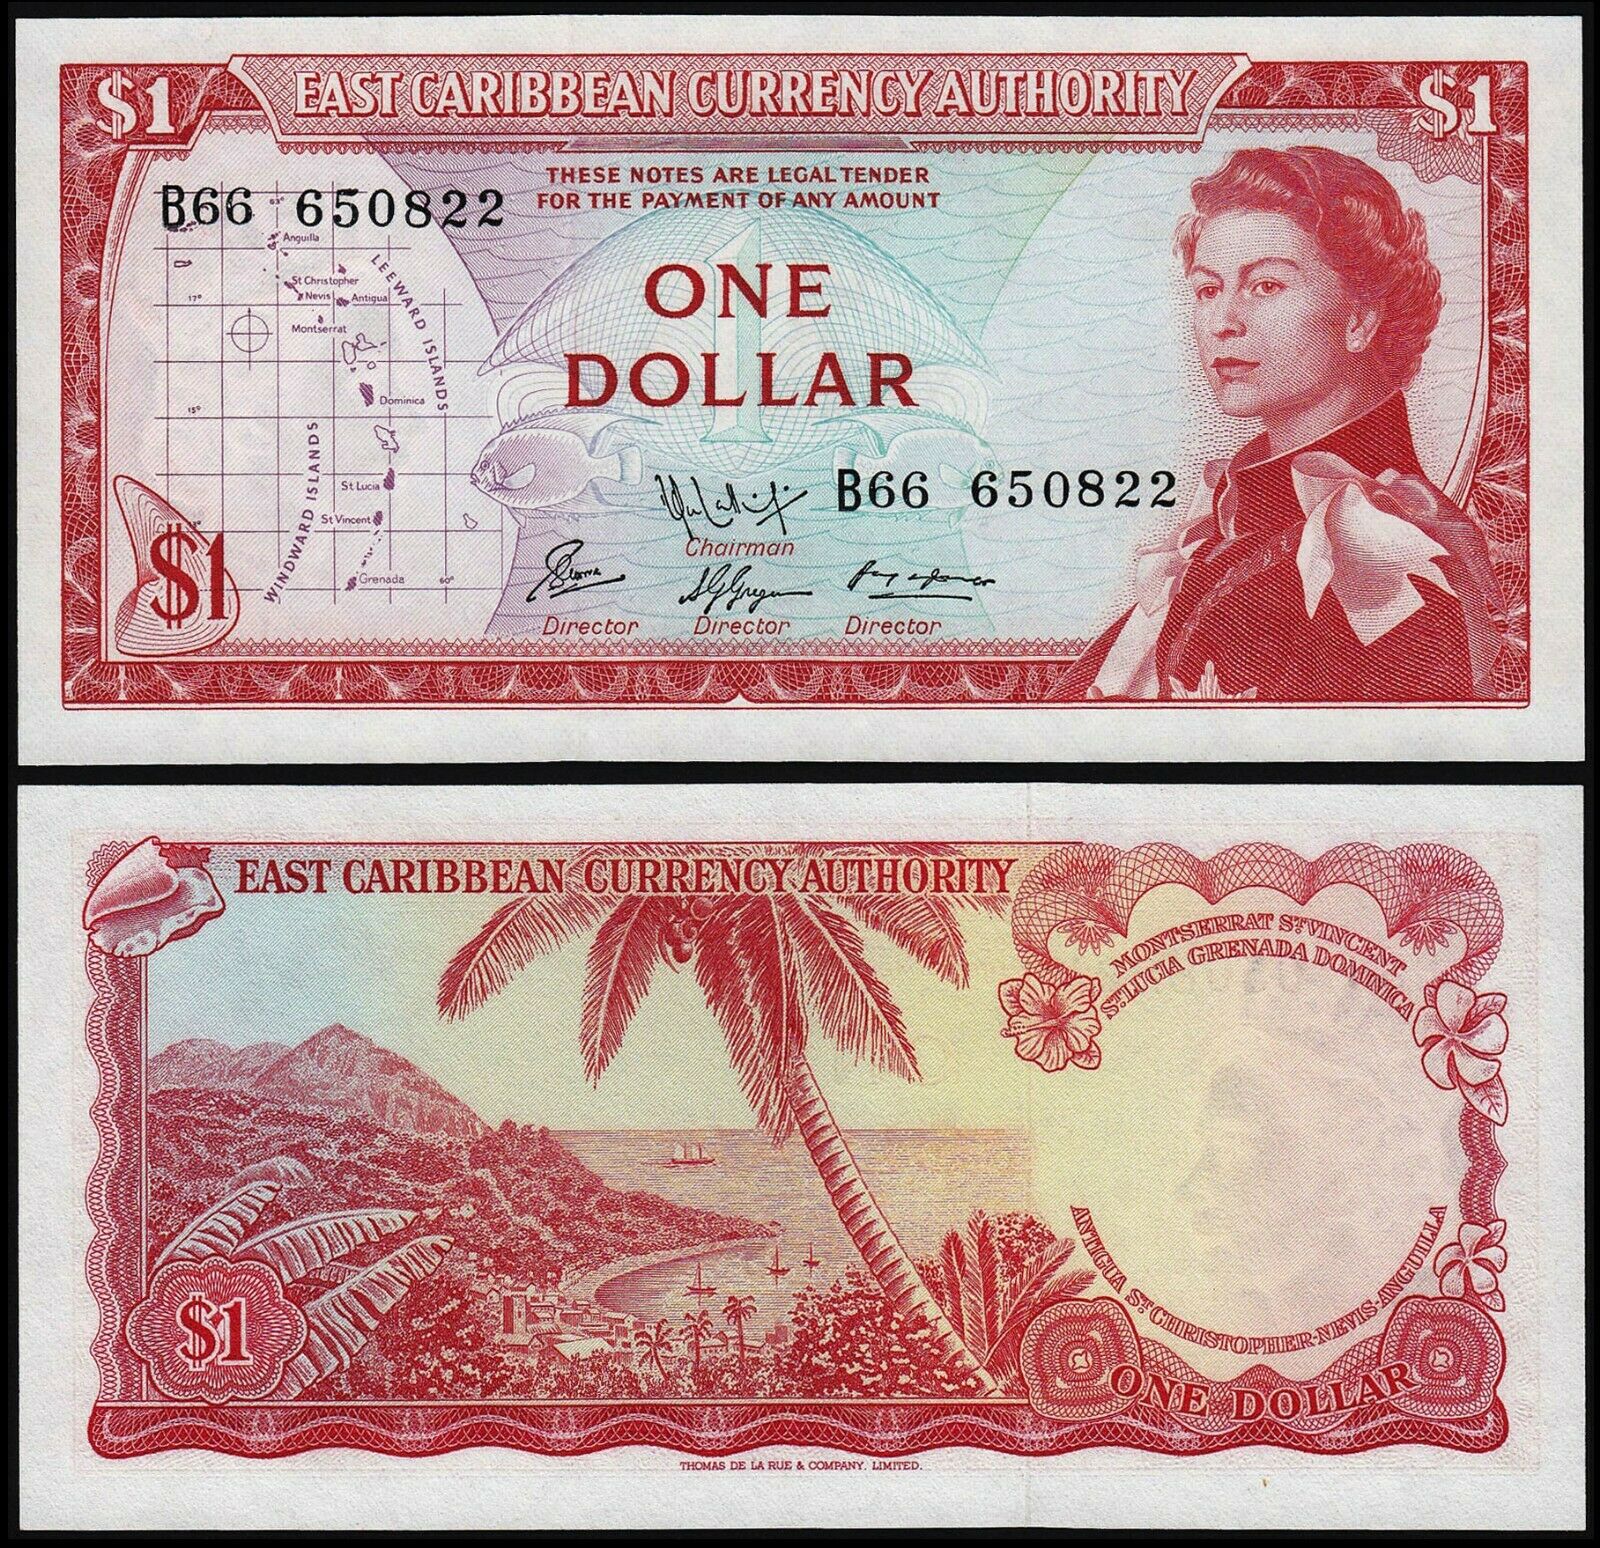 Tiền thế giới sưu tầm 1 dollar Đông Caribe